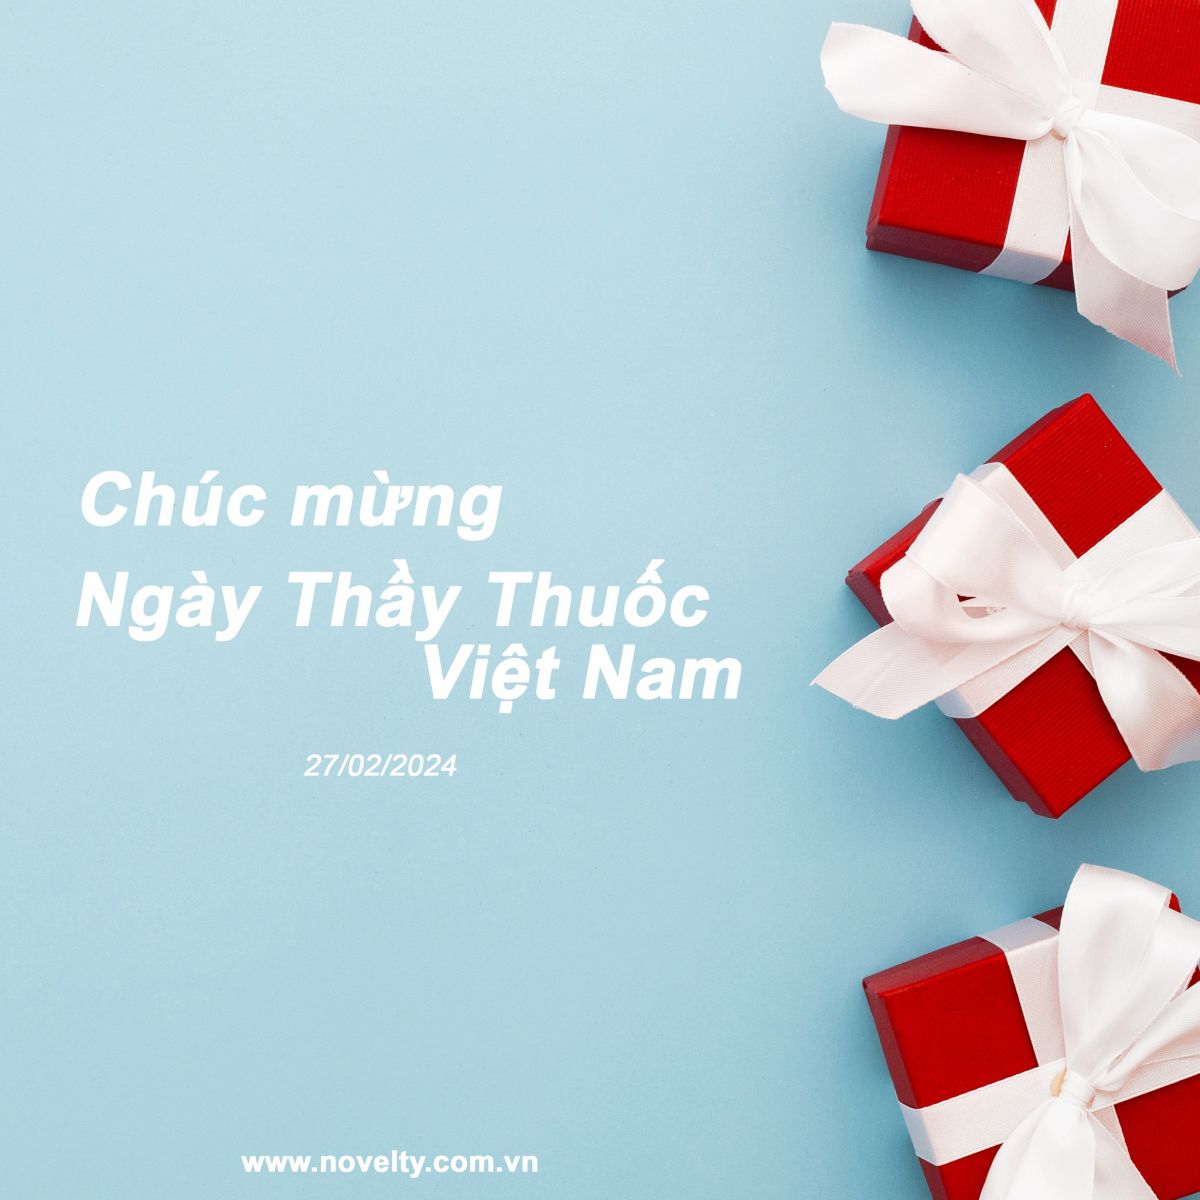 Chúc mừng Ngày Thầy Thuốc Việt Nam